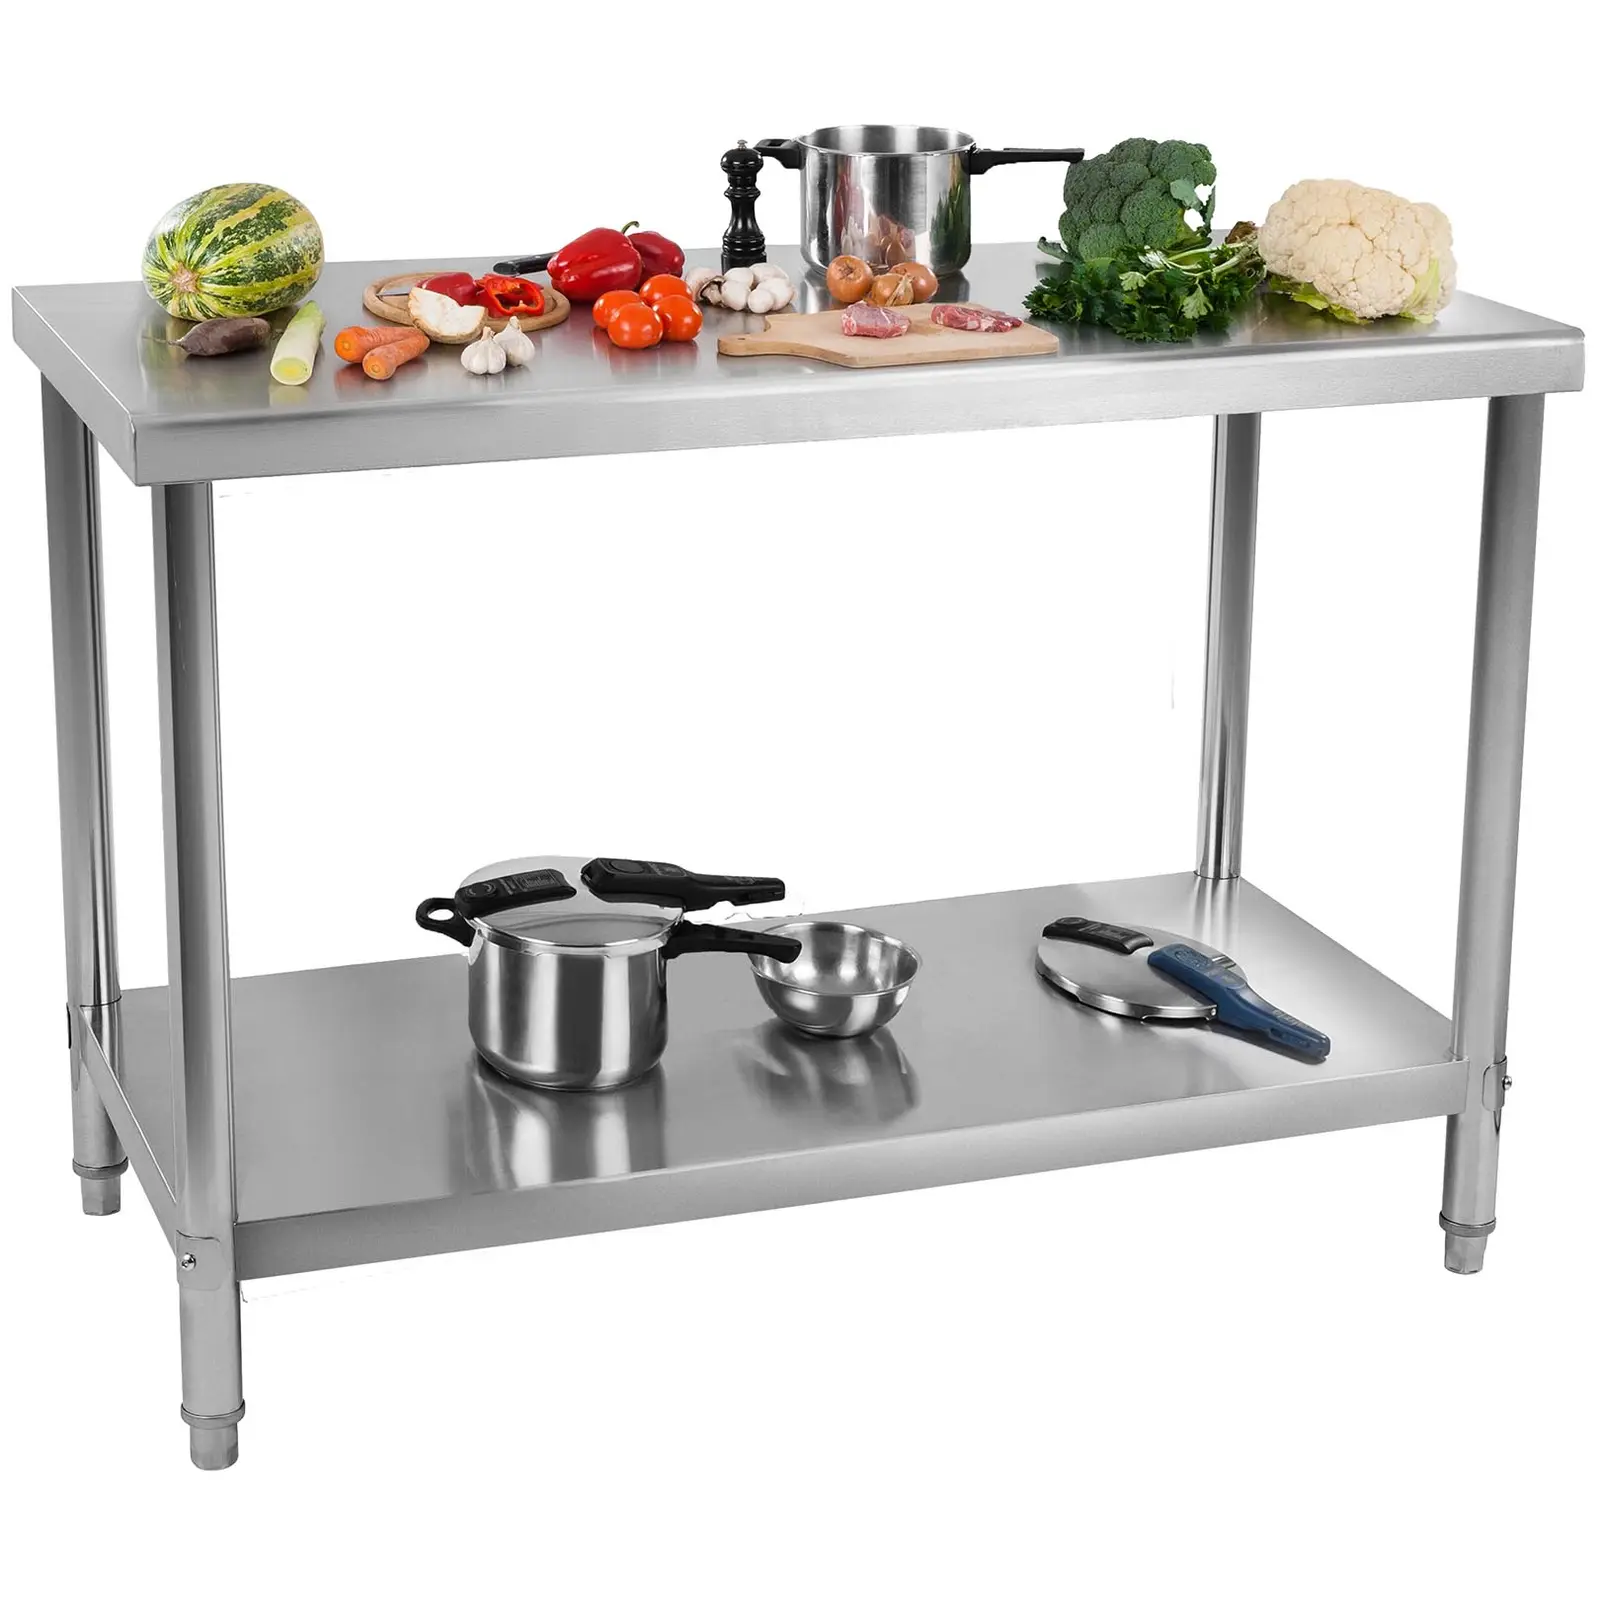 Nerezový pracovní stůl 100 x 60 cm nosnost 114 kg - Gastro pracovní stoly Royal Catering